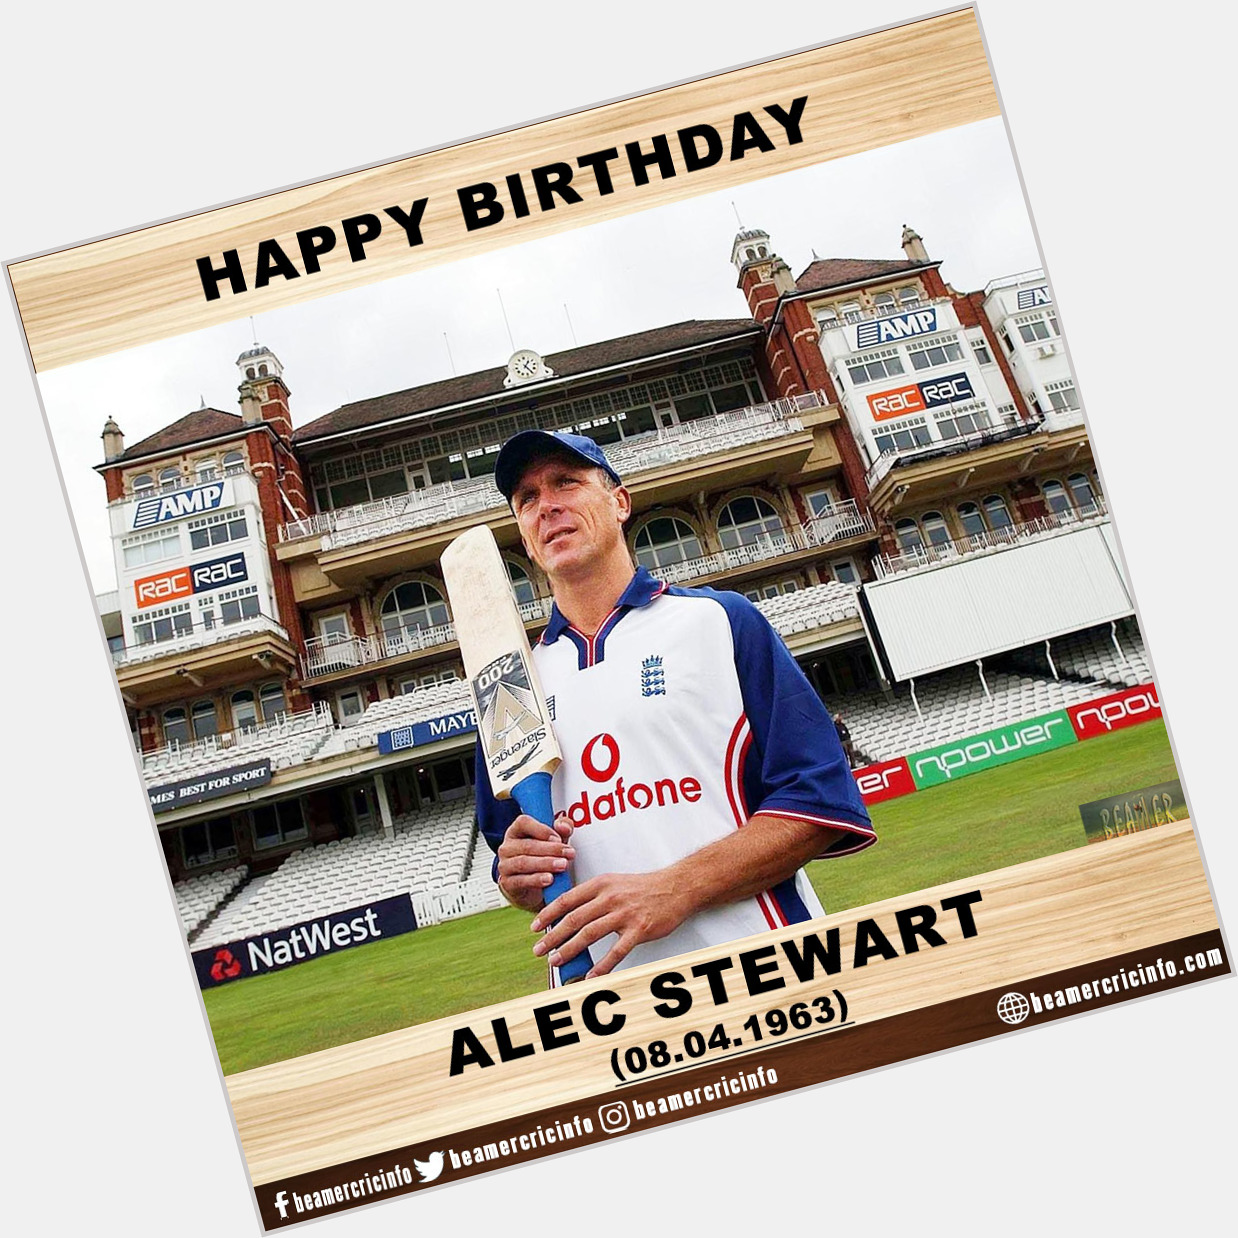 Happy Birthday!!!
Alec Stewart...      